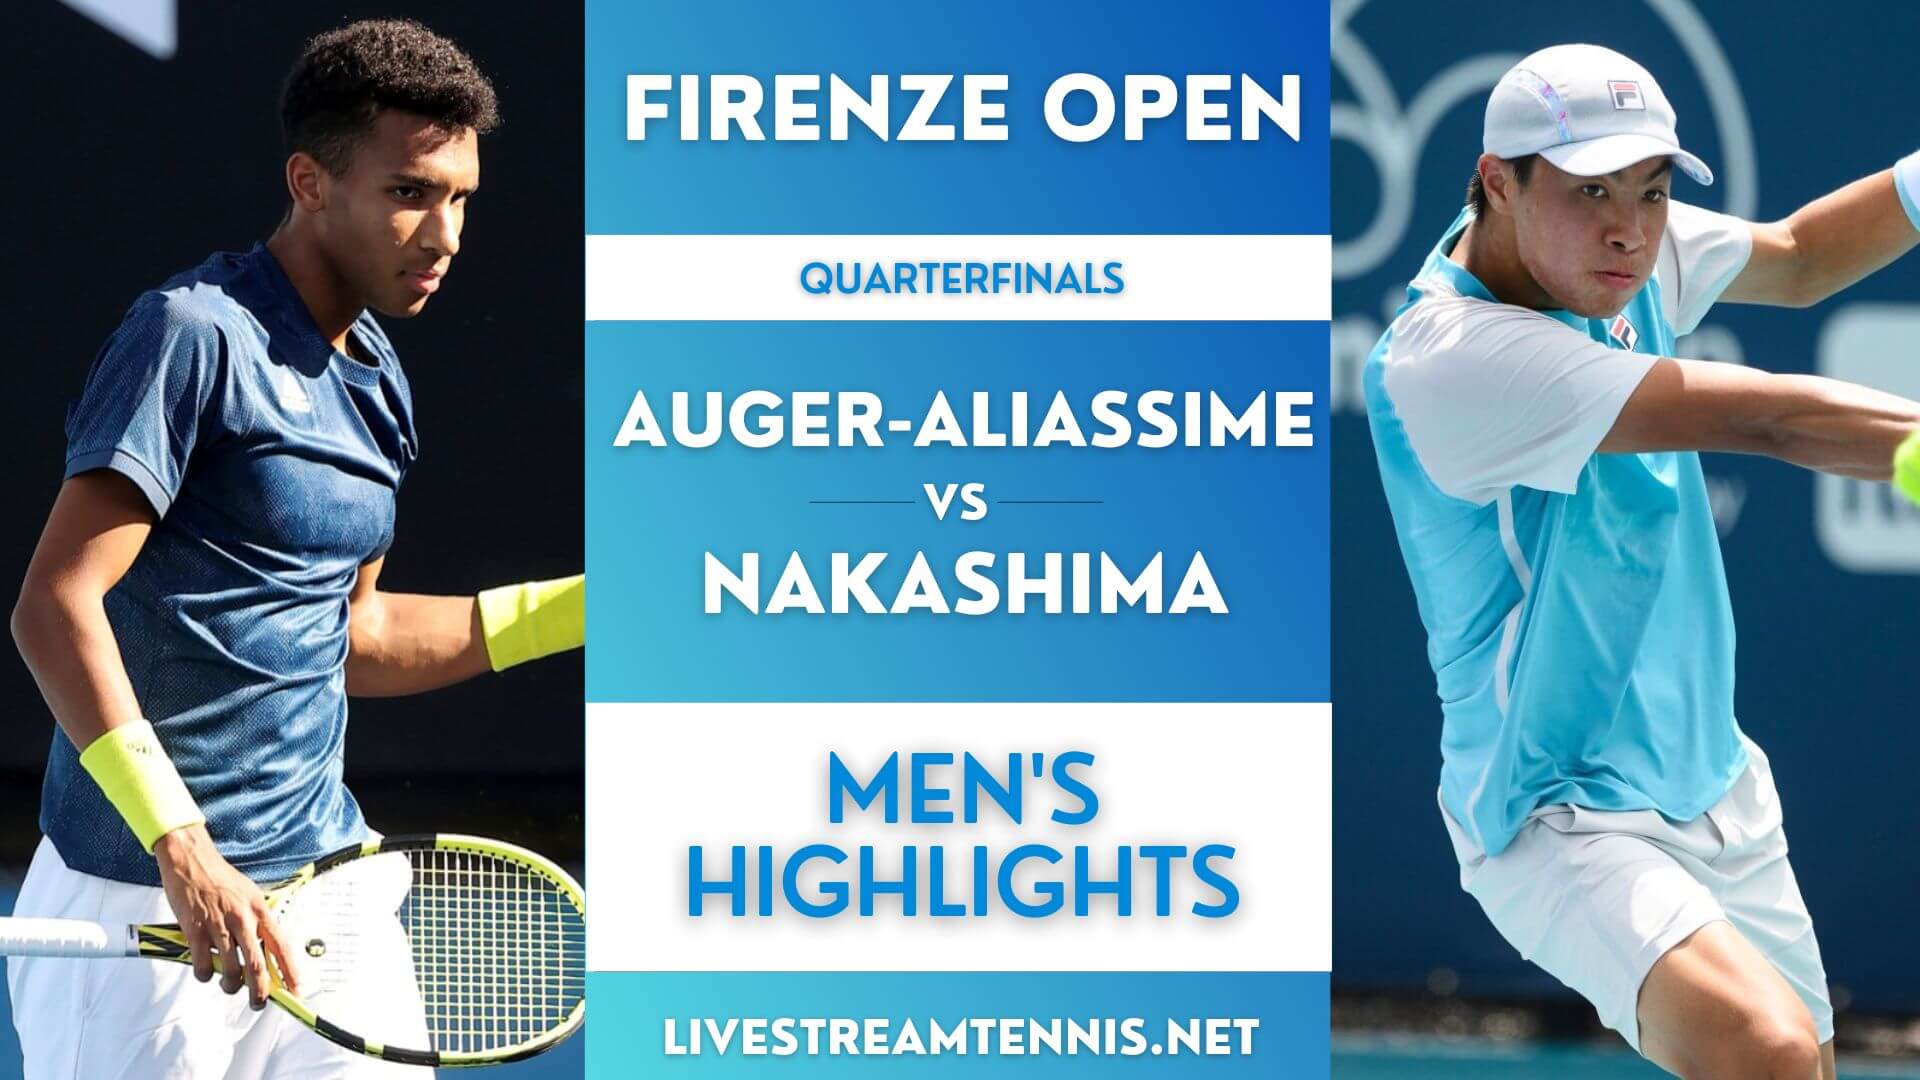 Firenze Open ATP Quarterfinal 4 Highlights 2022